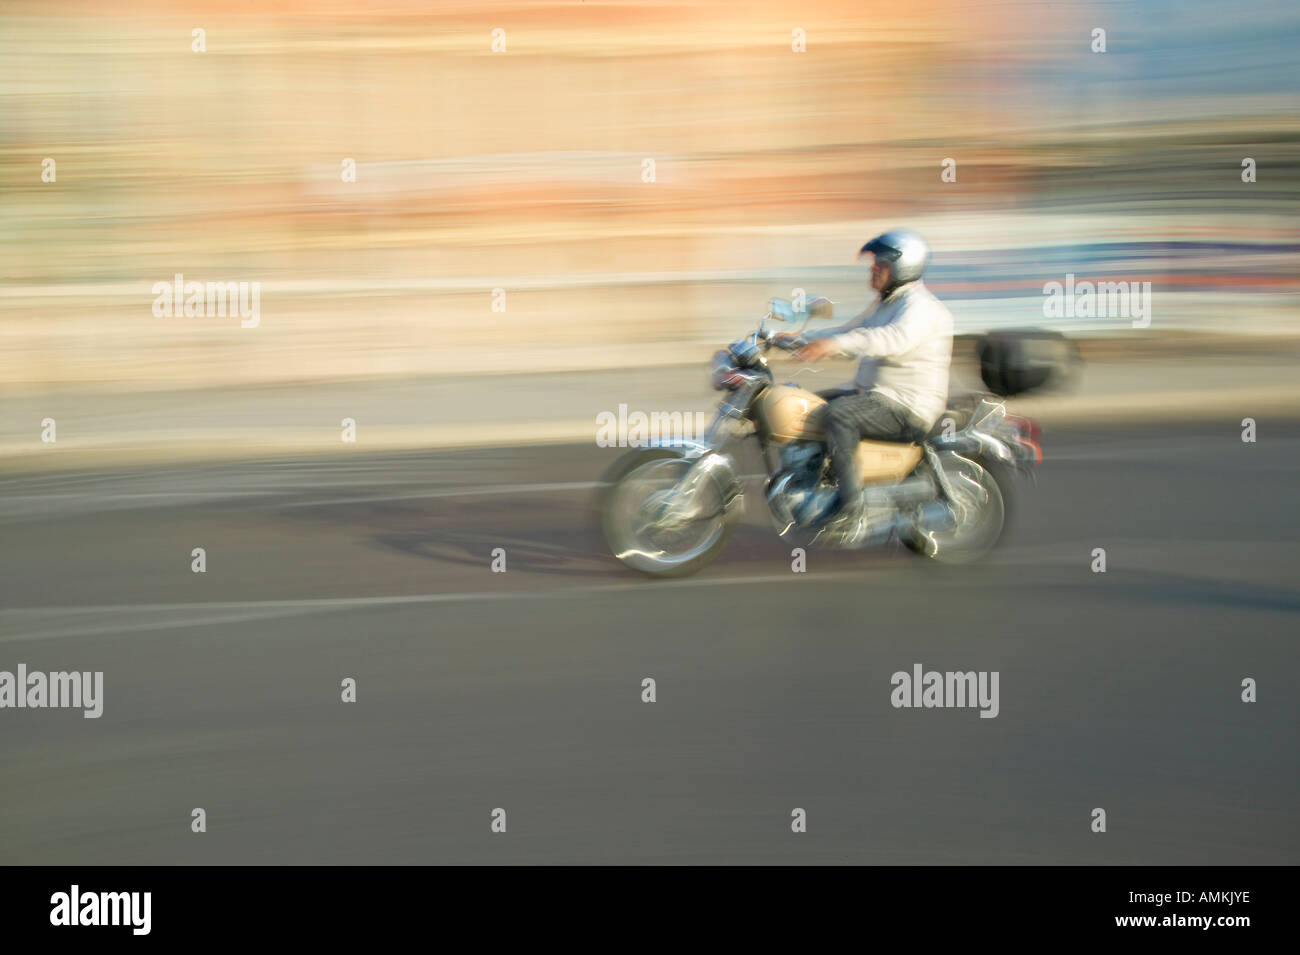 Schönes motorrad -Fotos und -Bildmaterial in hoher Auflösung – Alamy